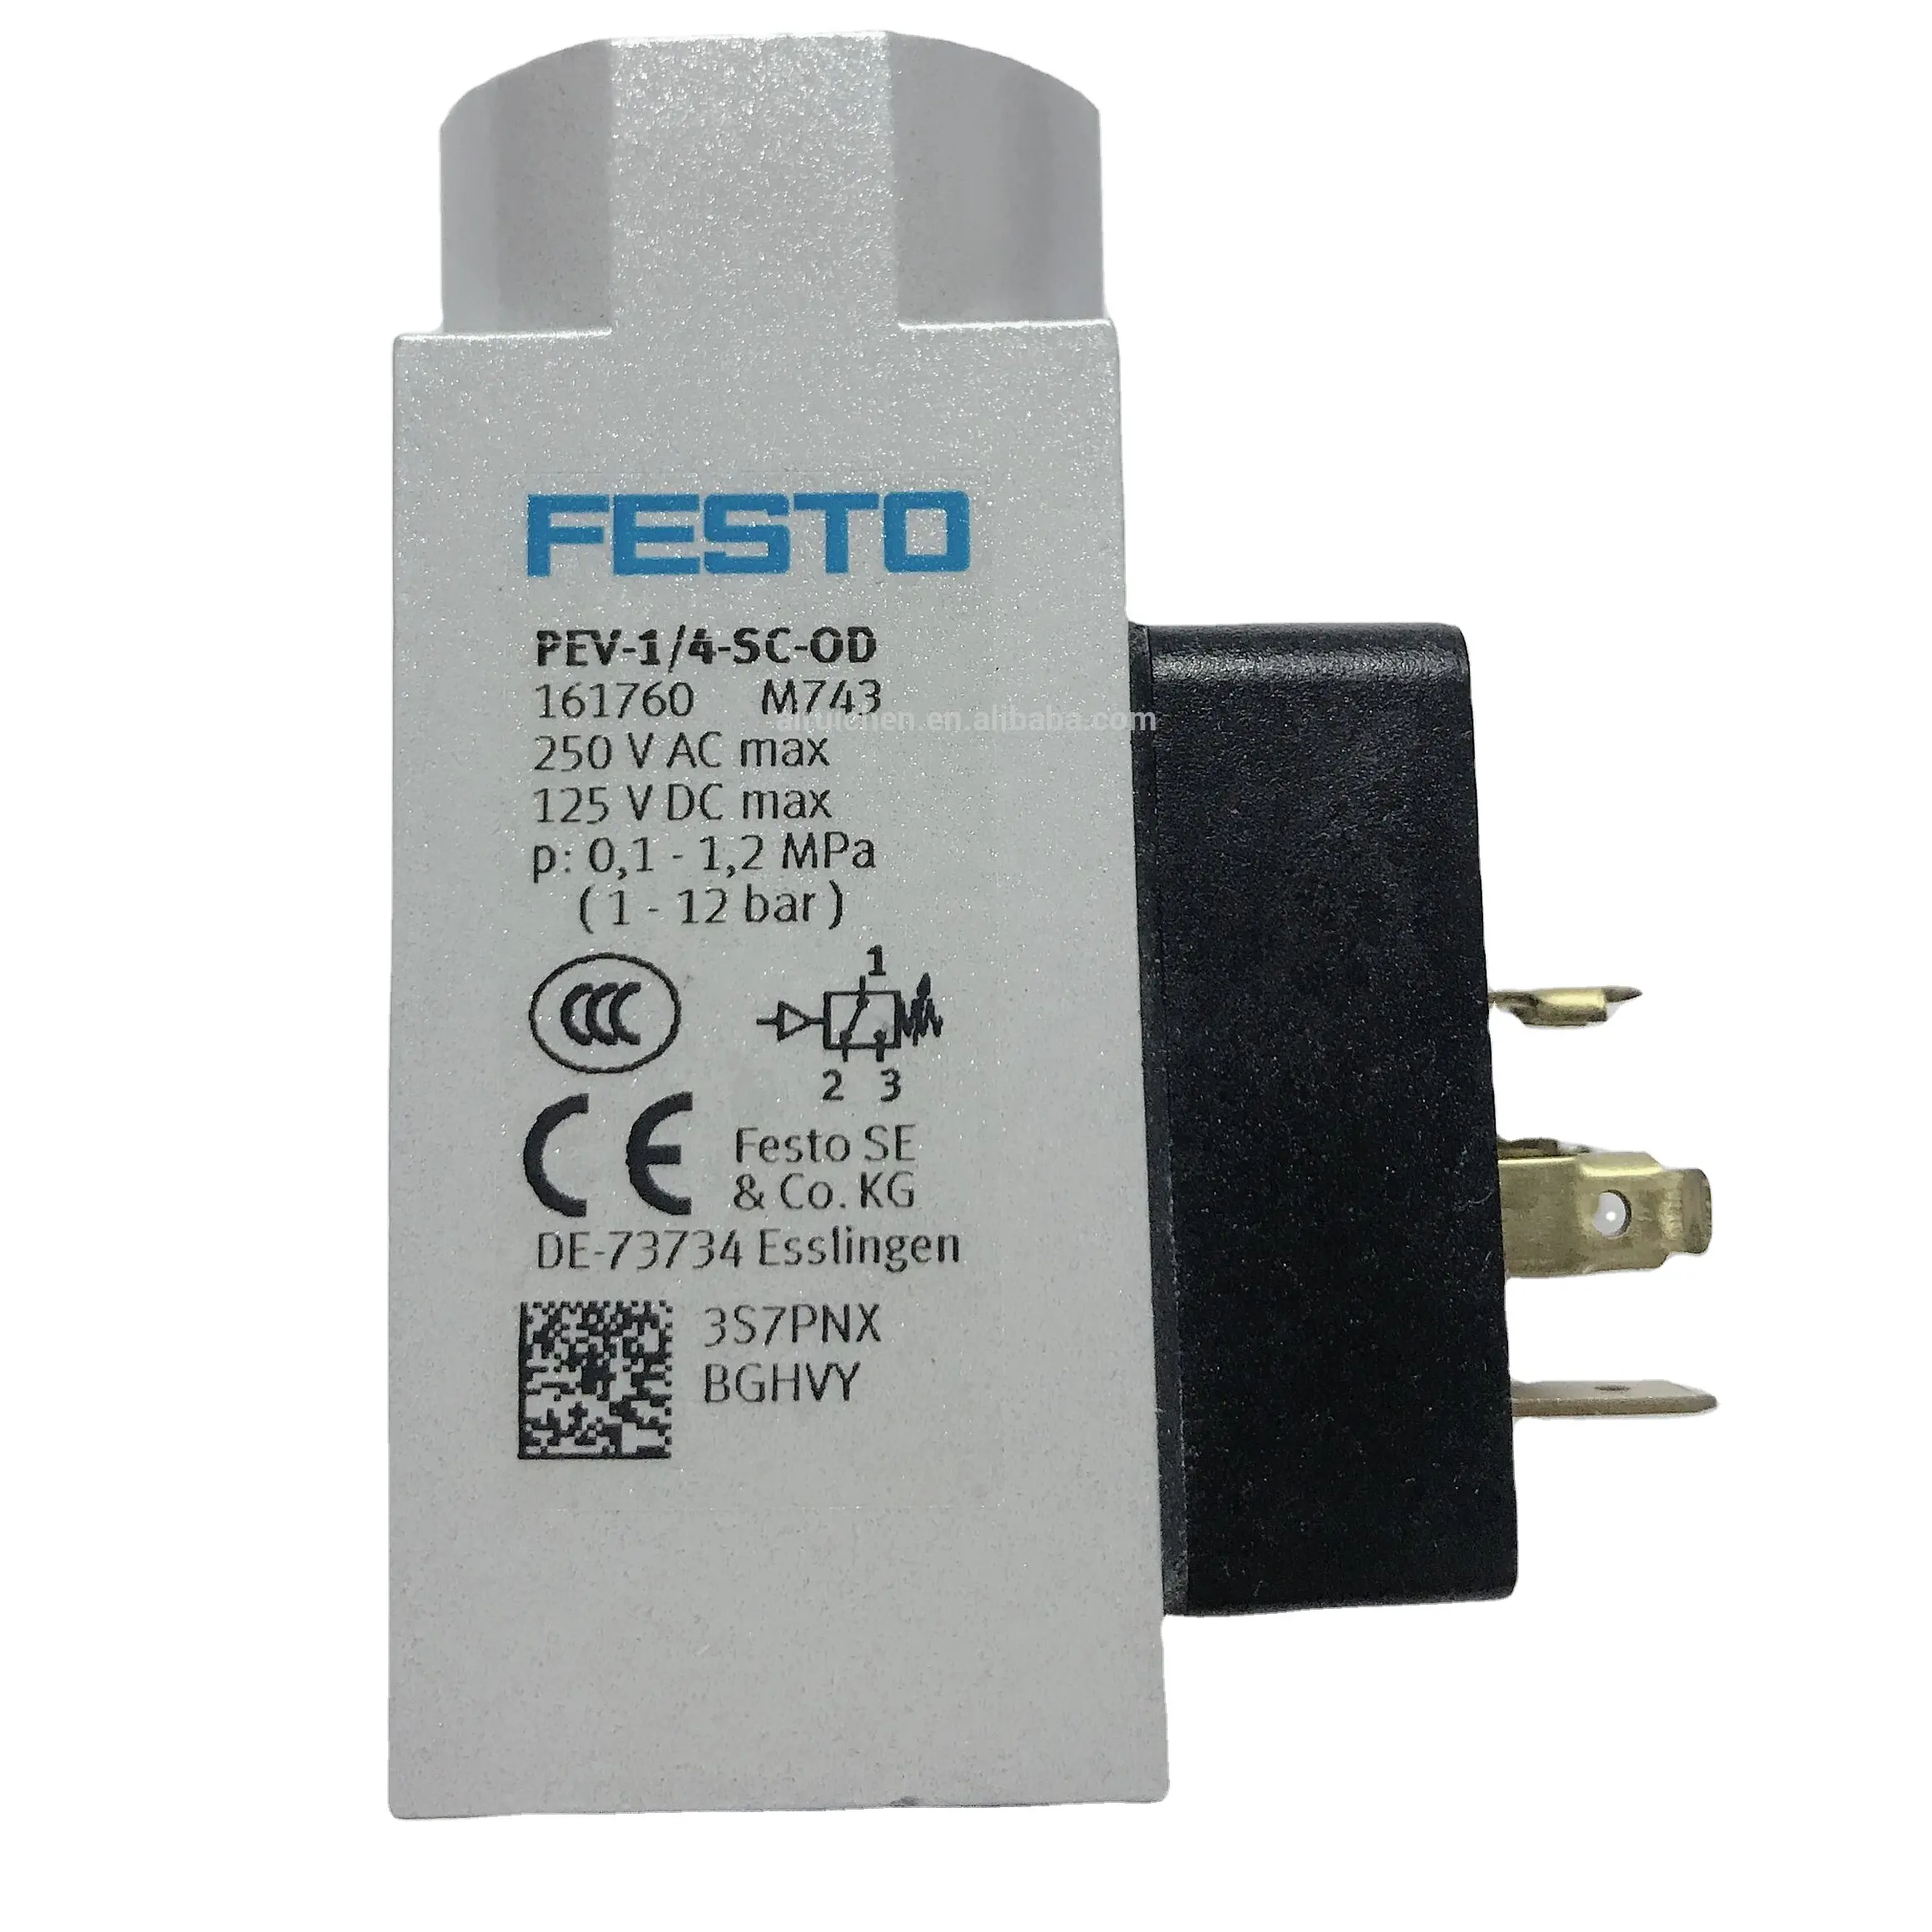 새로운 본래 FESTOnew 압축 공기를 넣은 성분 161760 PEV-1/4-SC-OD 압력 스위치